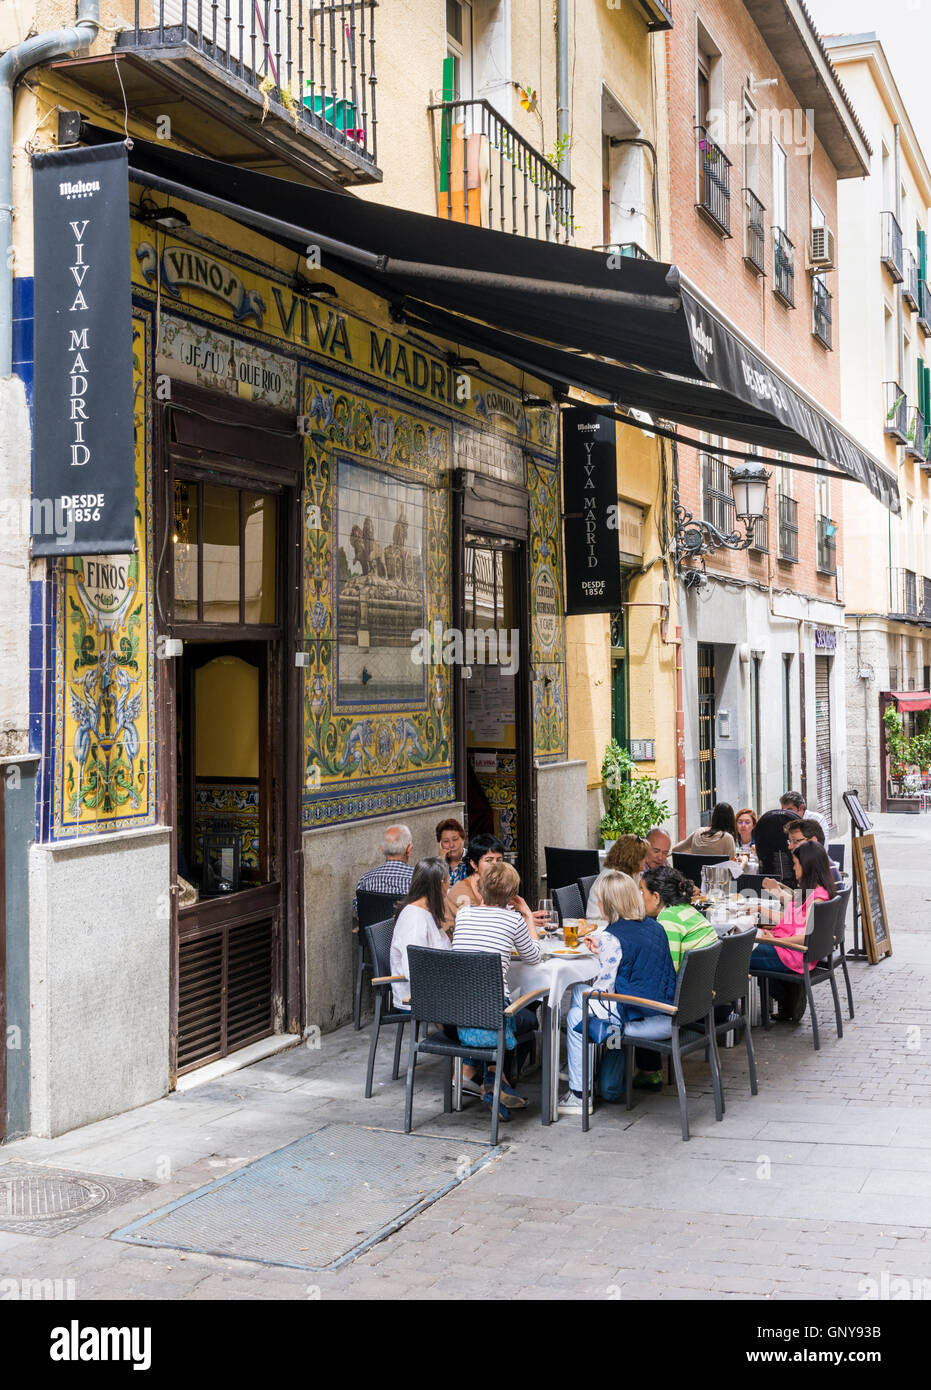 Personas sentadas afuera de la histórica Viva Madrid restaurante en el barrio de Huertas, Madrid, España Foto de stock